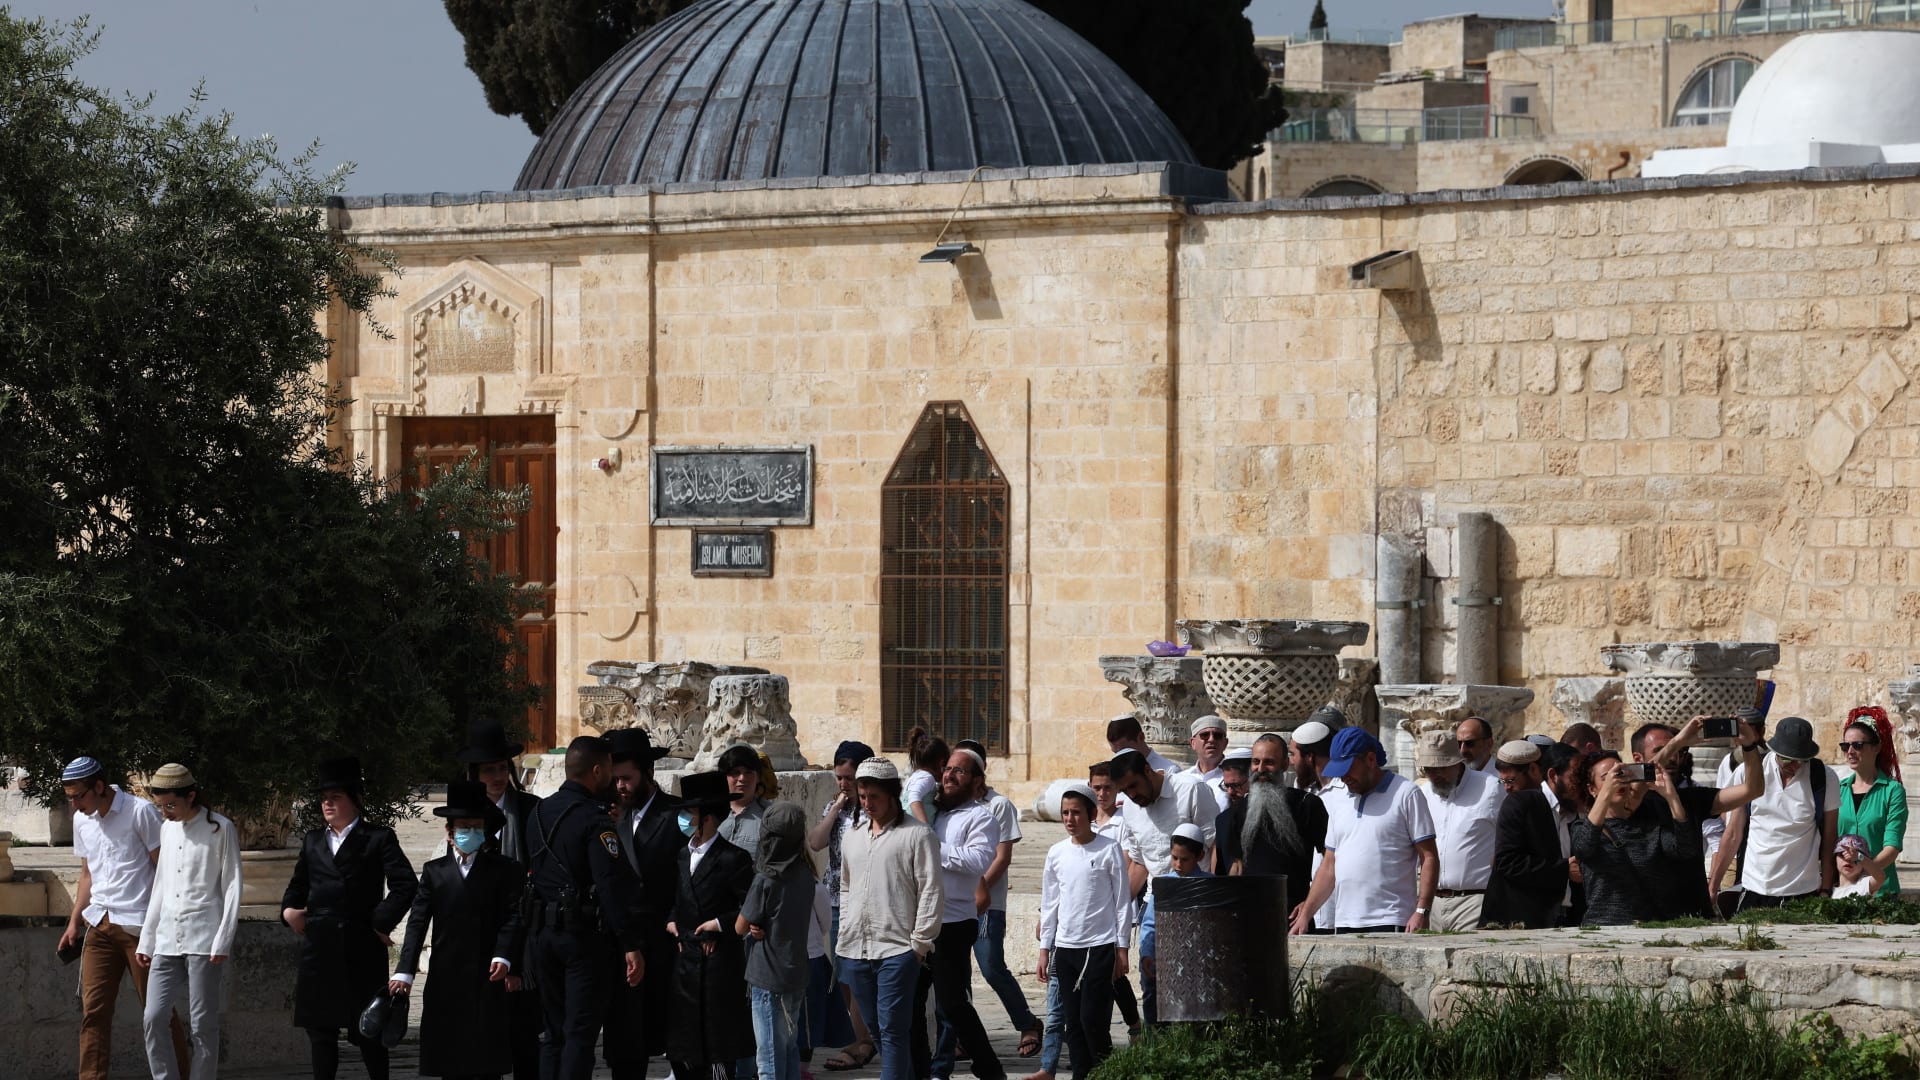 خارجية الأردن تدين الاقتحامات المستمرة لباحات المسجد الأقصى: إسرائيل تتحمل مسؤولية التصعيد